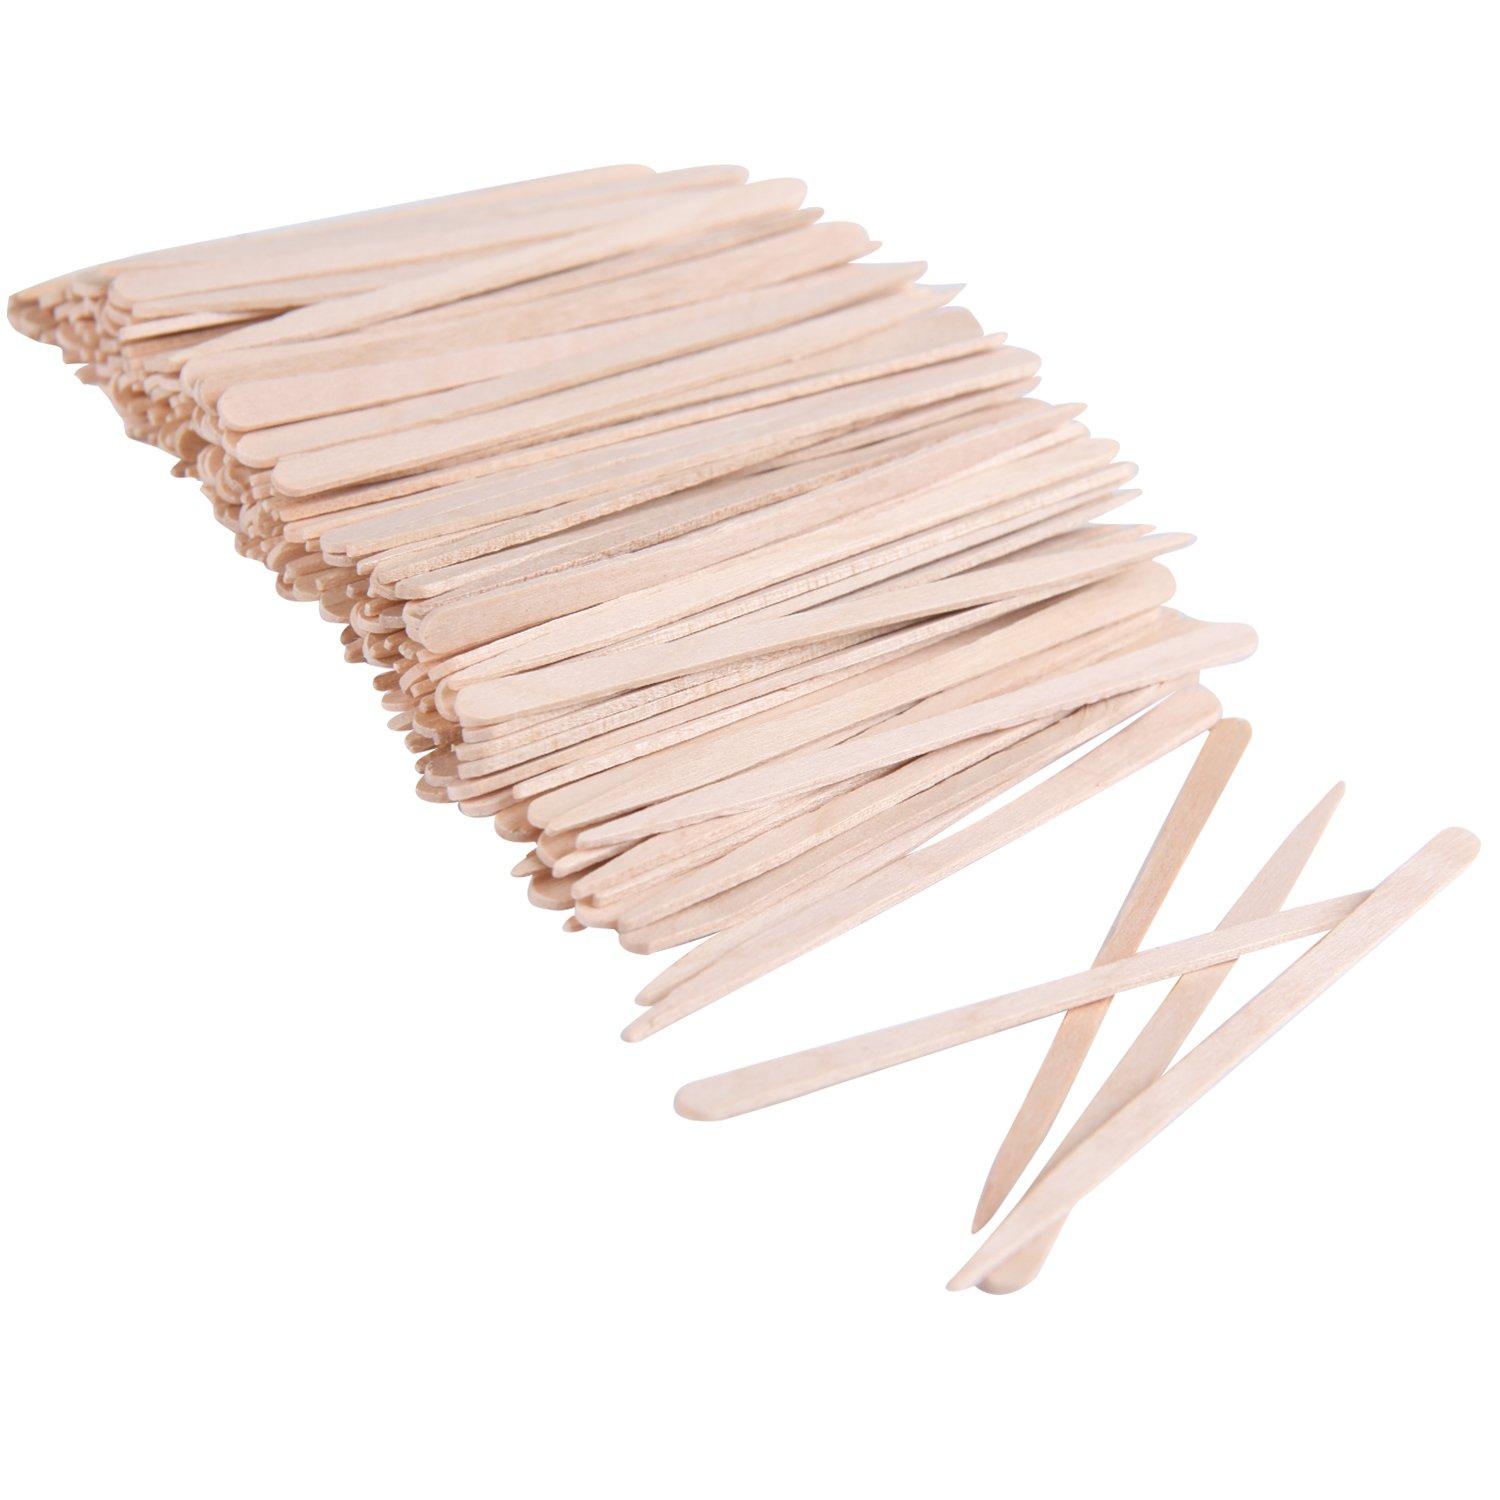 Senkary 600 Pieces Wooden Waxing Sticks Wax Sticks Wax Applicator Sticks  Wax Spatulas Wood Craft Sticks Small for Hair Eyebrow Nose Removal 